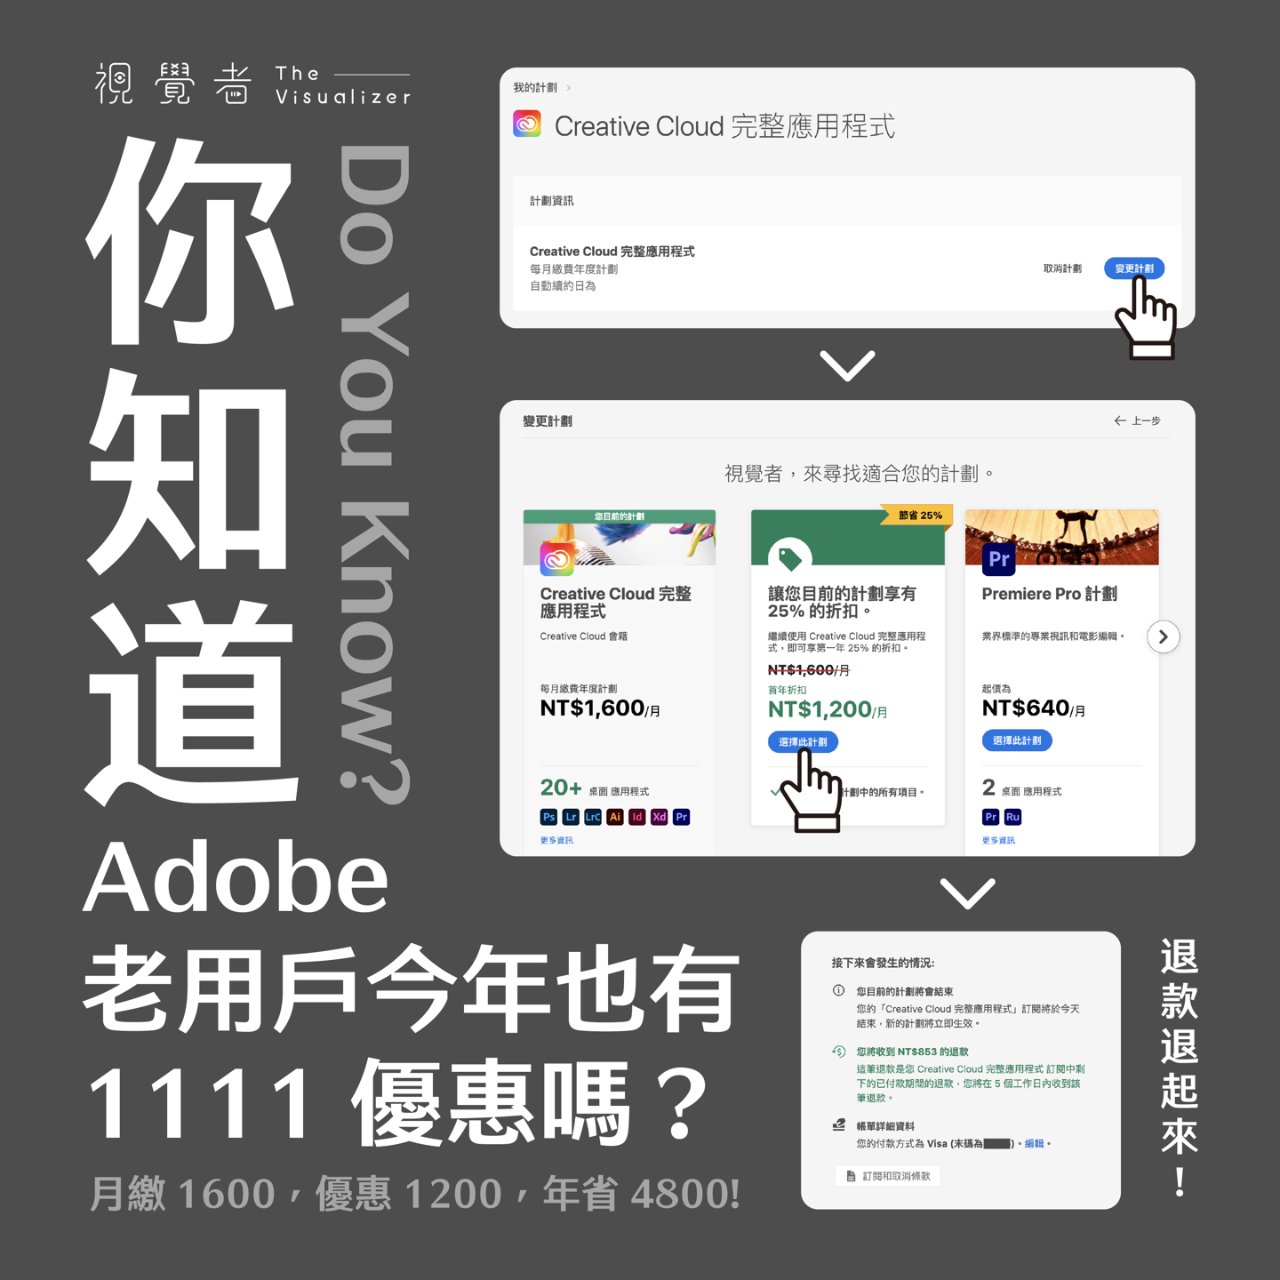 Adobe 奥多比